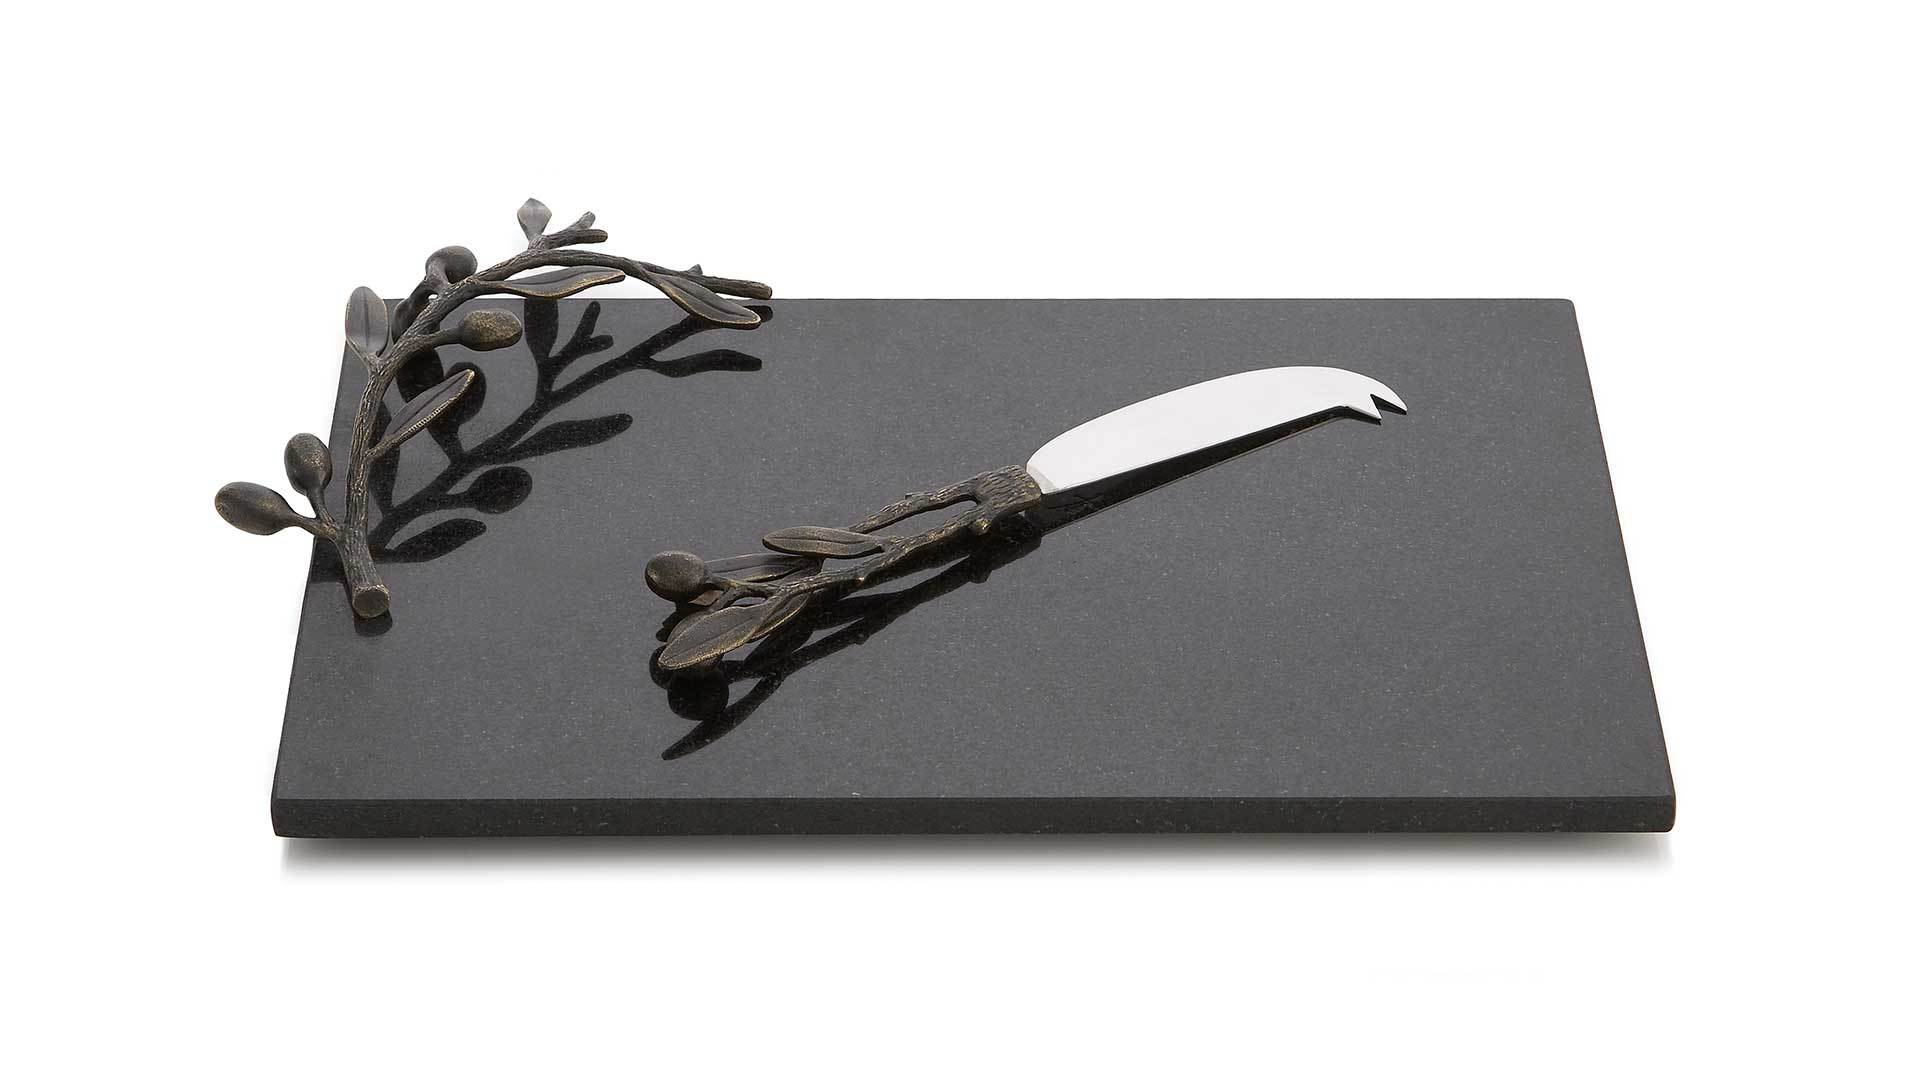 Доска для сыра с ножом Michael Aram Оливковая ветвь 32х23 см, чёрная